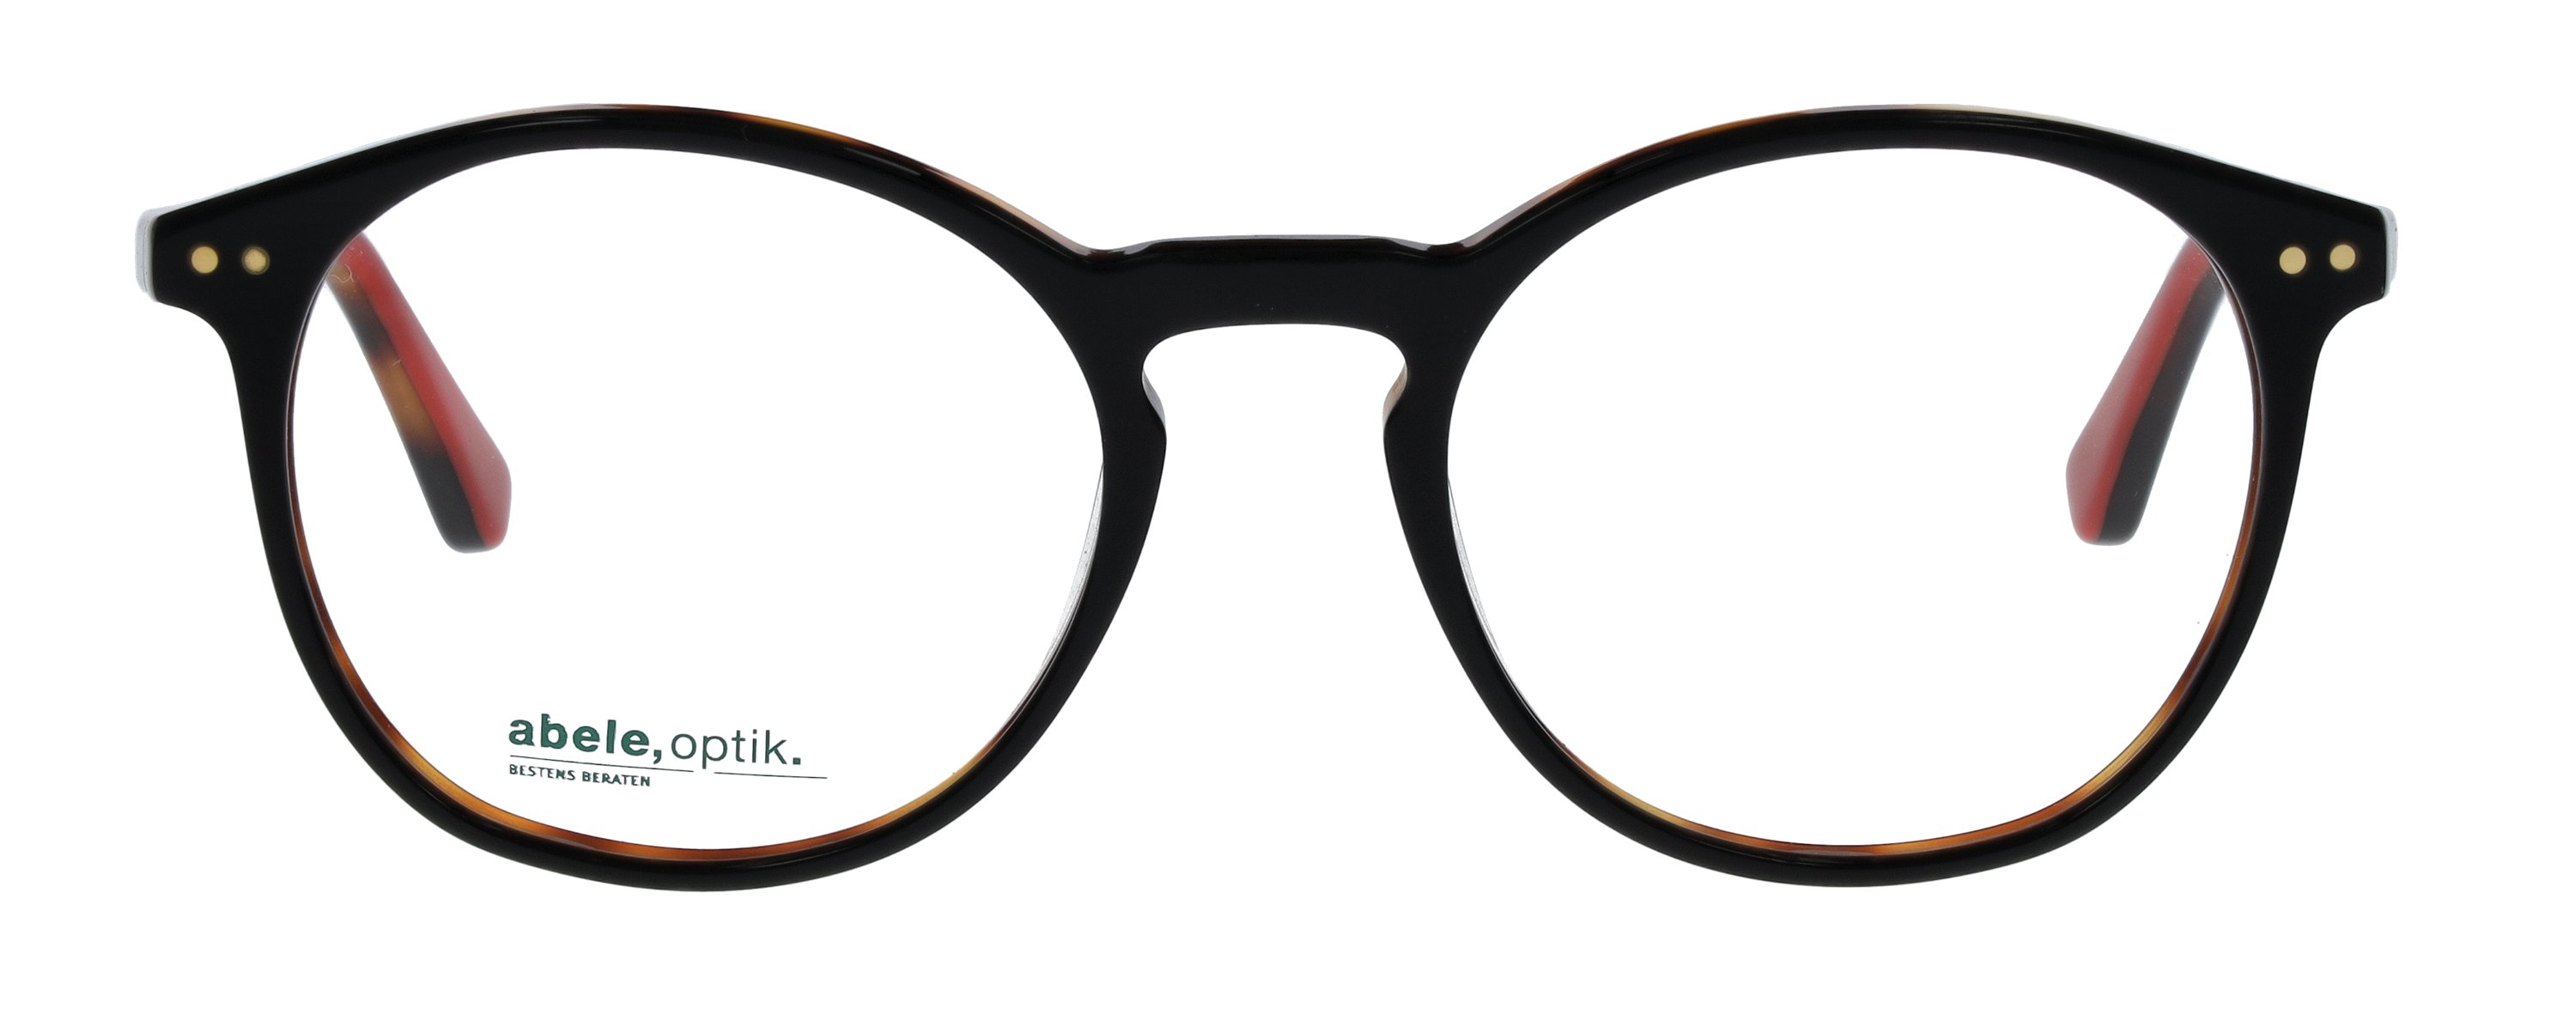 Das Bild zeigt die Korrektionsbrille 148661 von der Marke Abele Optik in schwarz.